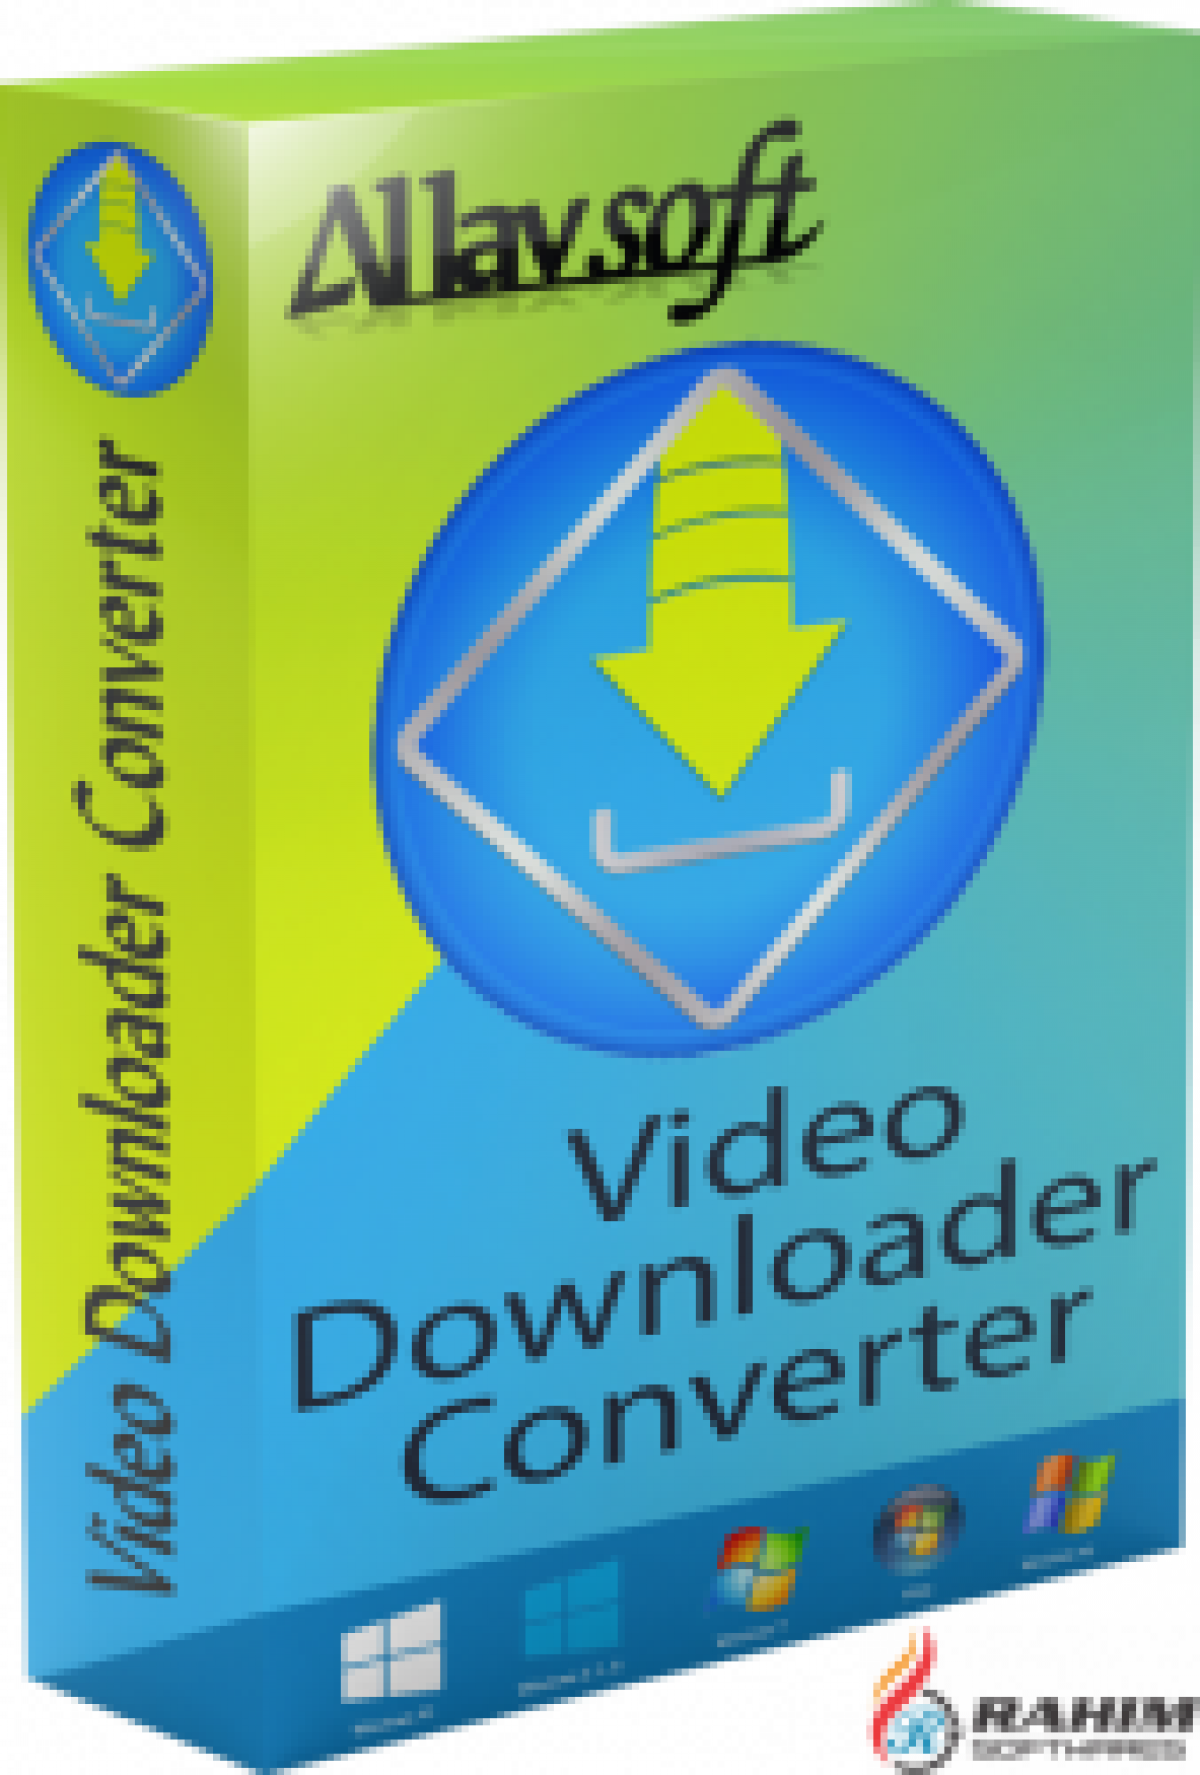 allavsoft video downloader converter crack